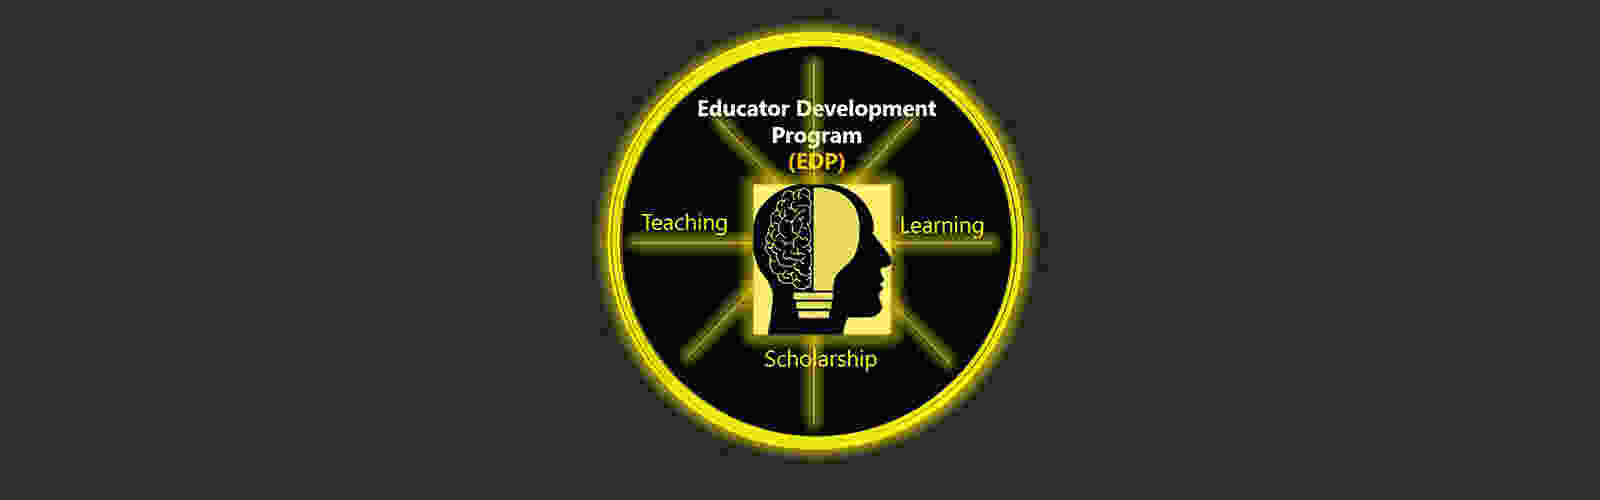 EDP-logo-slide.jpg